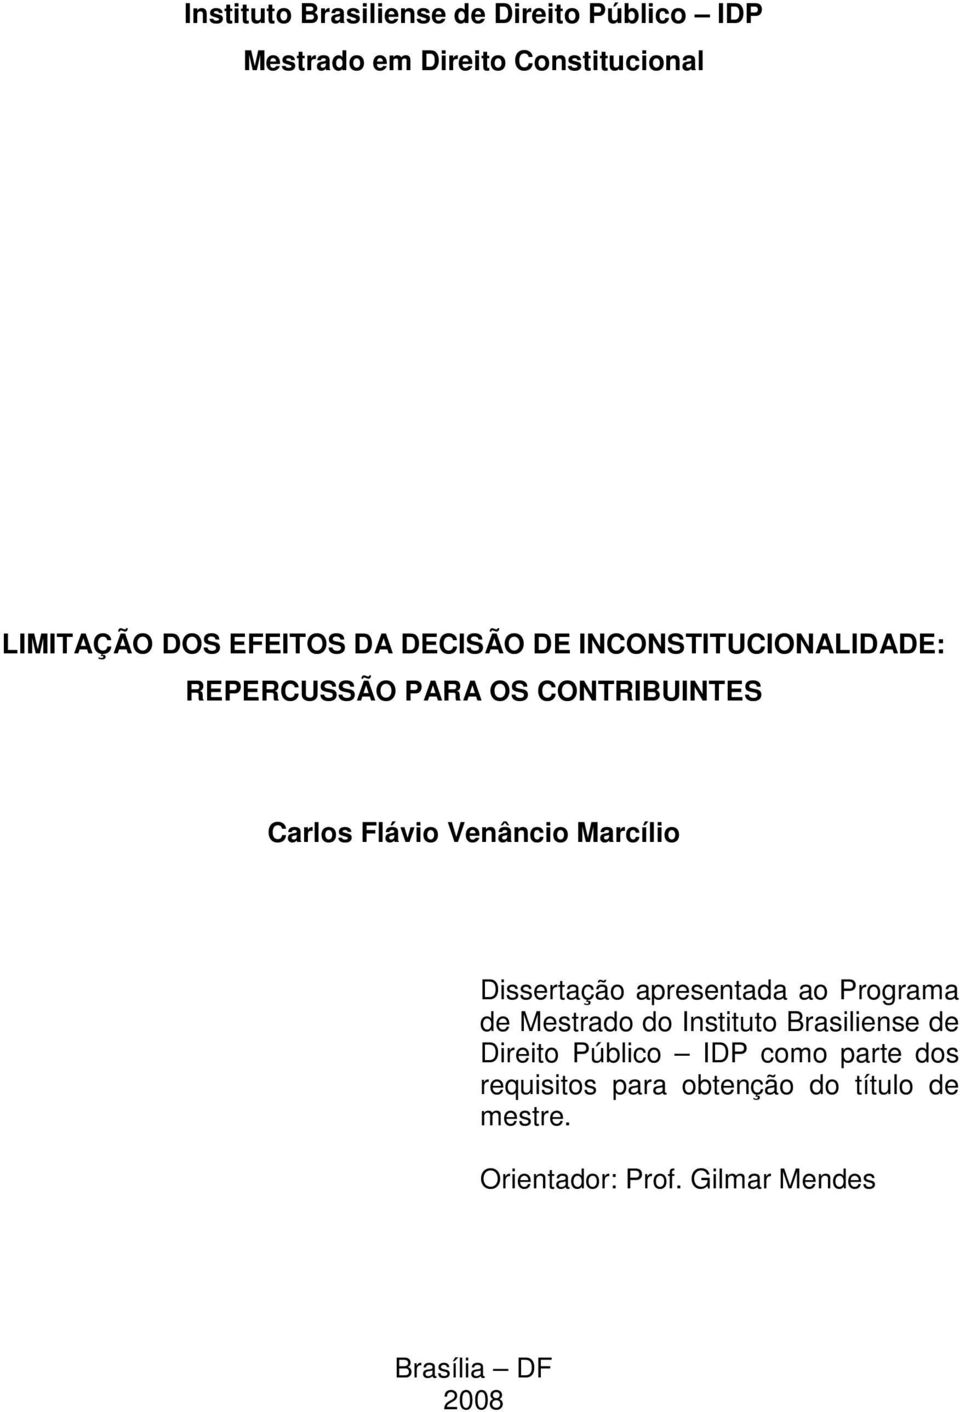 Dissertação apresentada ao Programa de Mestrado do Instituto Brasiliense de Direito Público IDP como